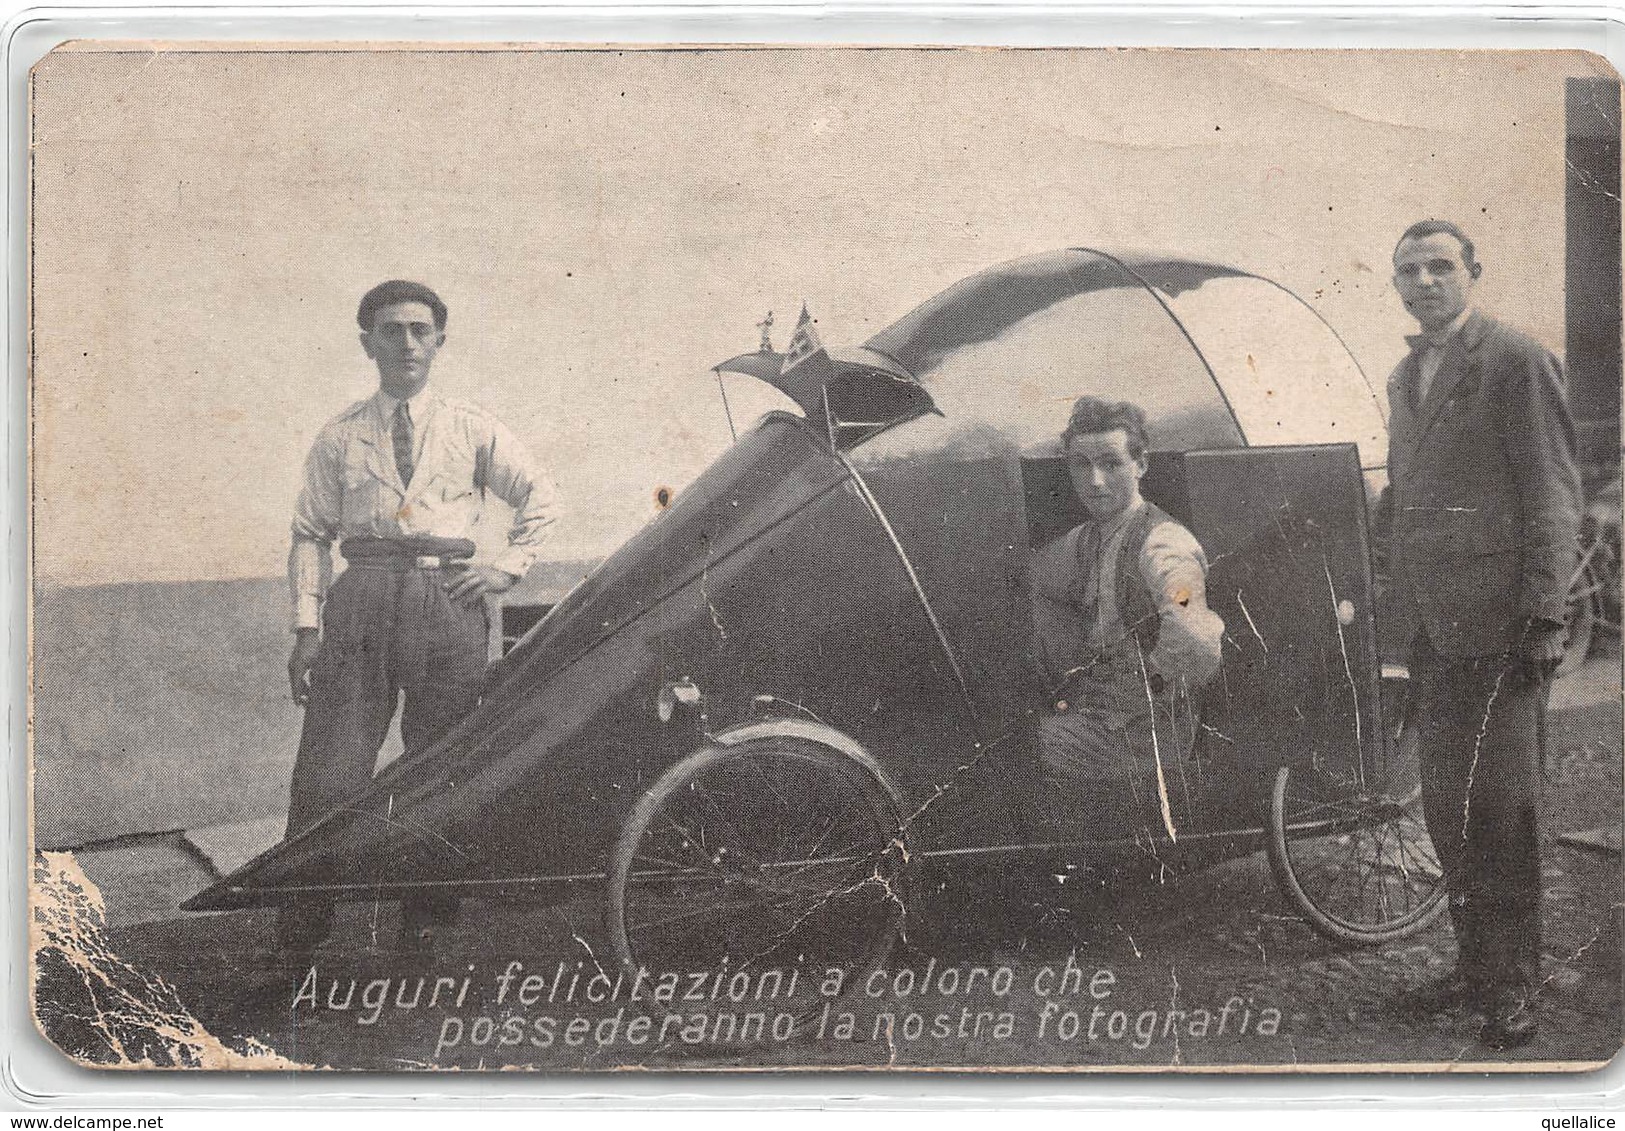 0321 "AUGURI FELICITAZIONI A COLORO CHE POSSEDERANNO LA NOSTRA FOTOGRAFIA - 1908" ANIMATA, AUTO. FOTOGRAFIA ORIGINALE - Automobiles